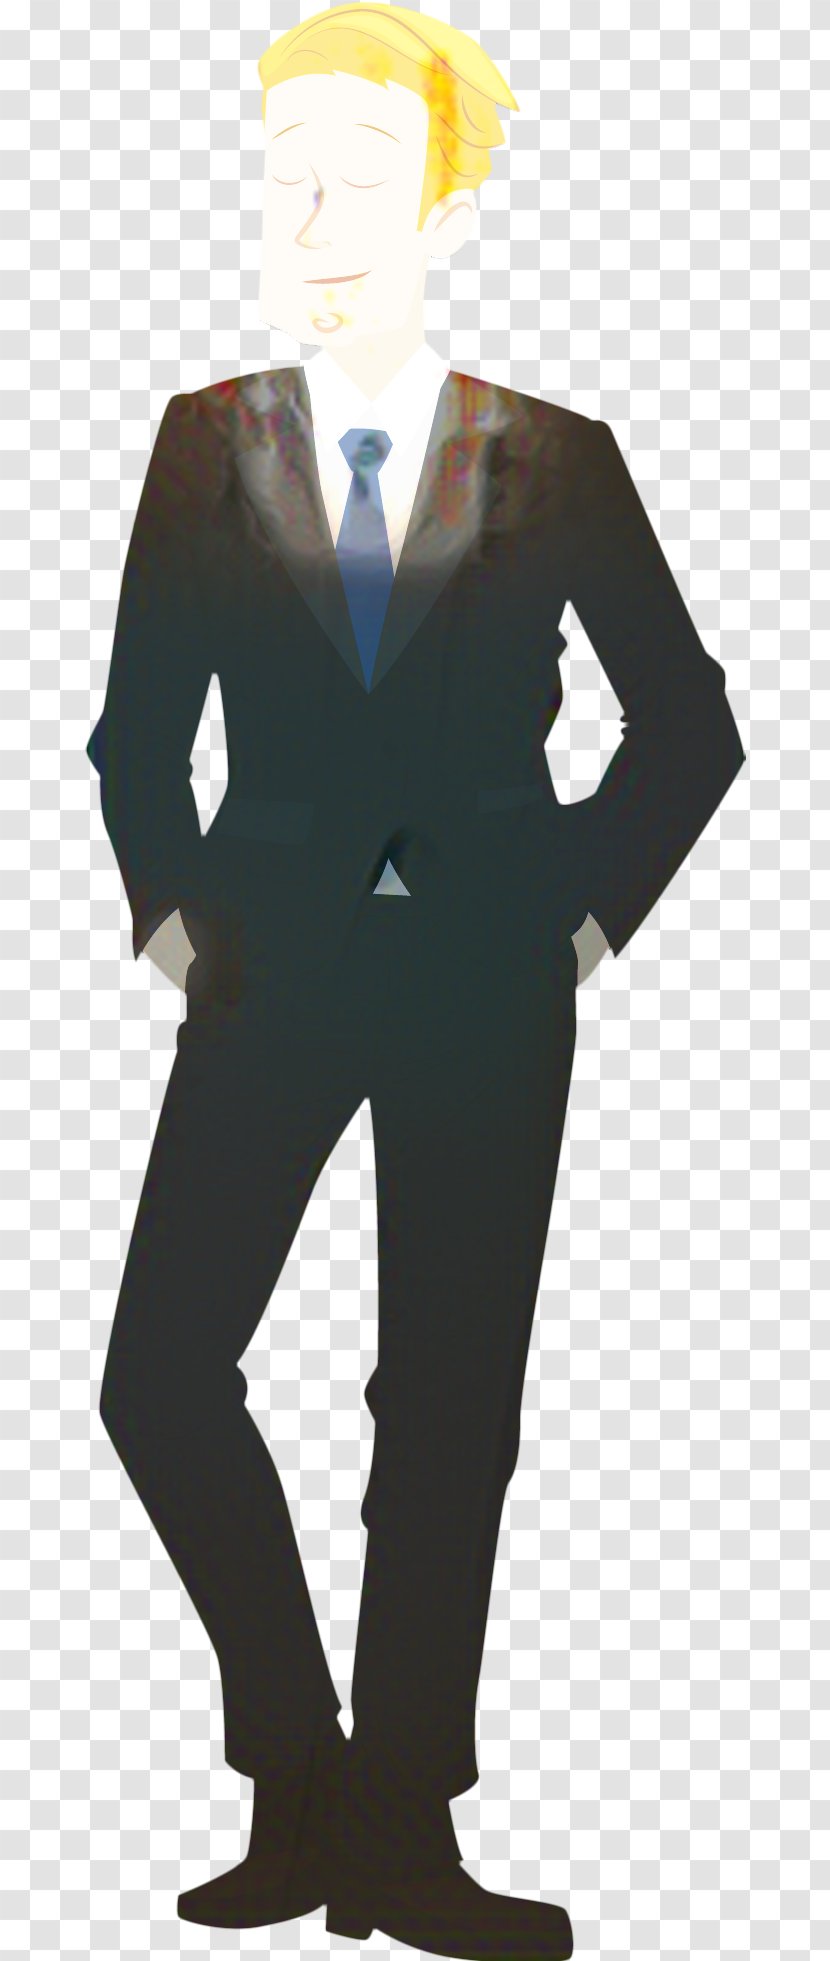 Character Suit - Tuxedo - Uniform Costume Transparent PNG